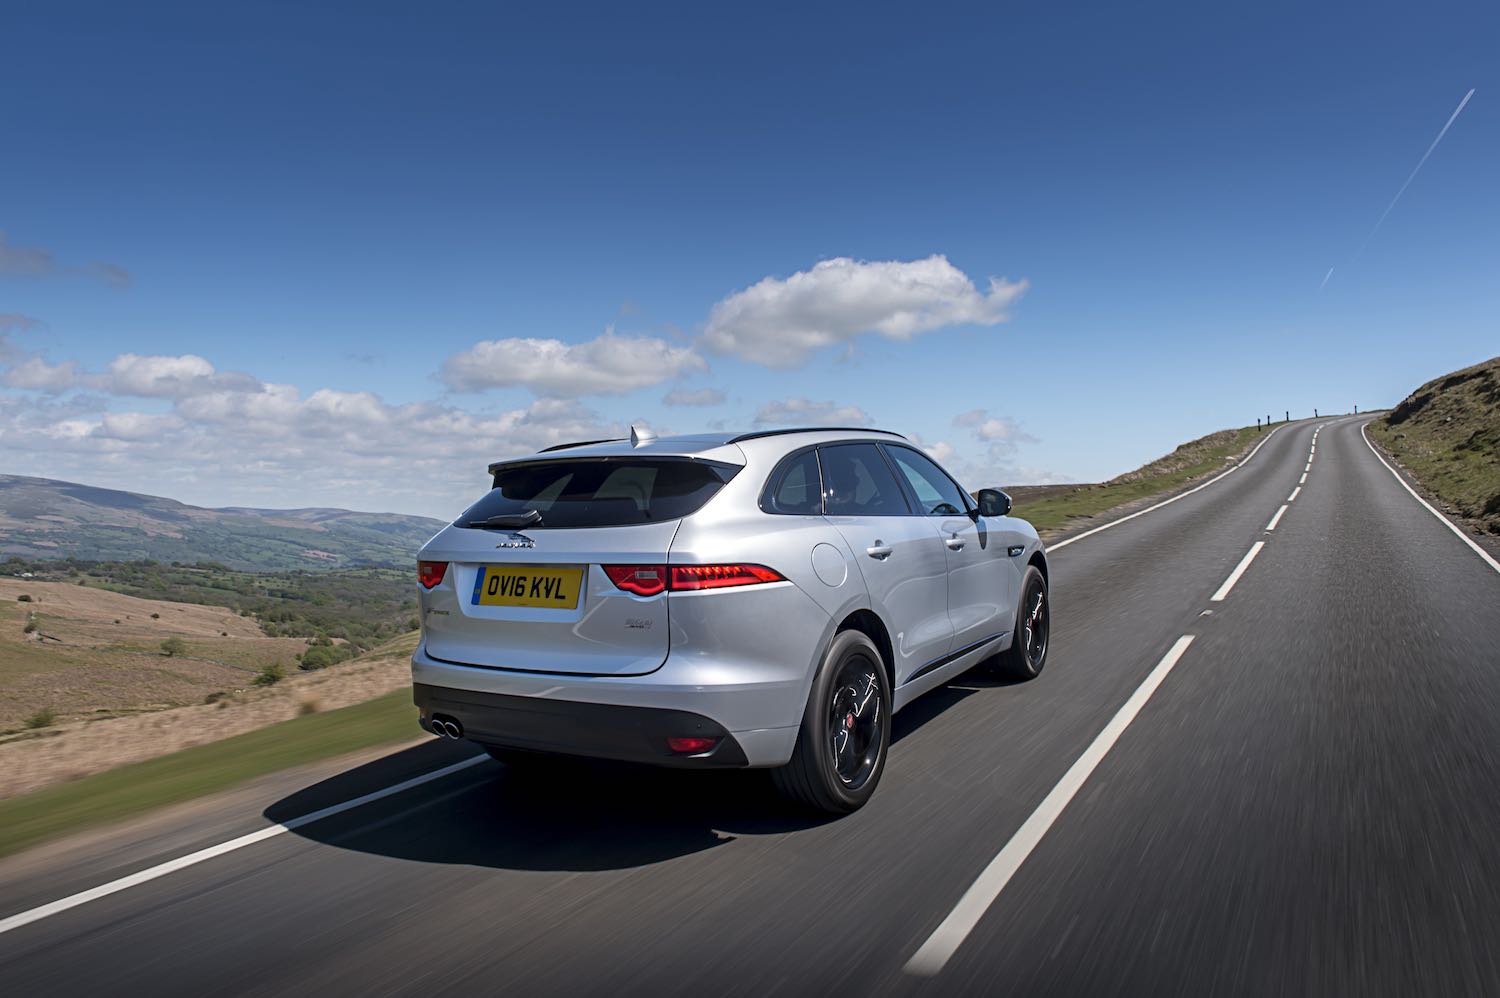 Neil Lyndon reviews the Jaguar F-Pace for Drive.co.uk-10